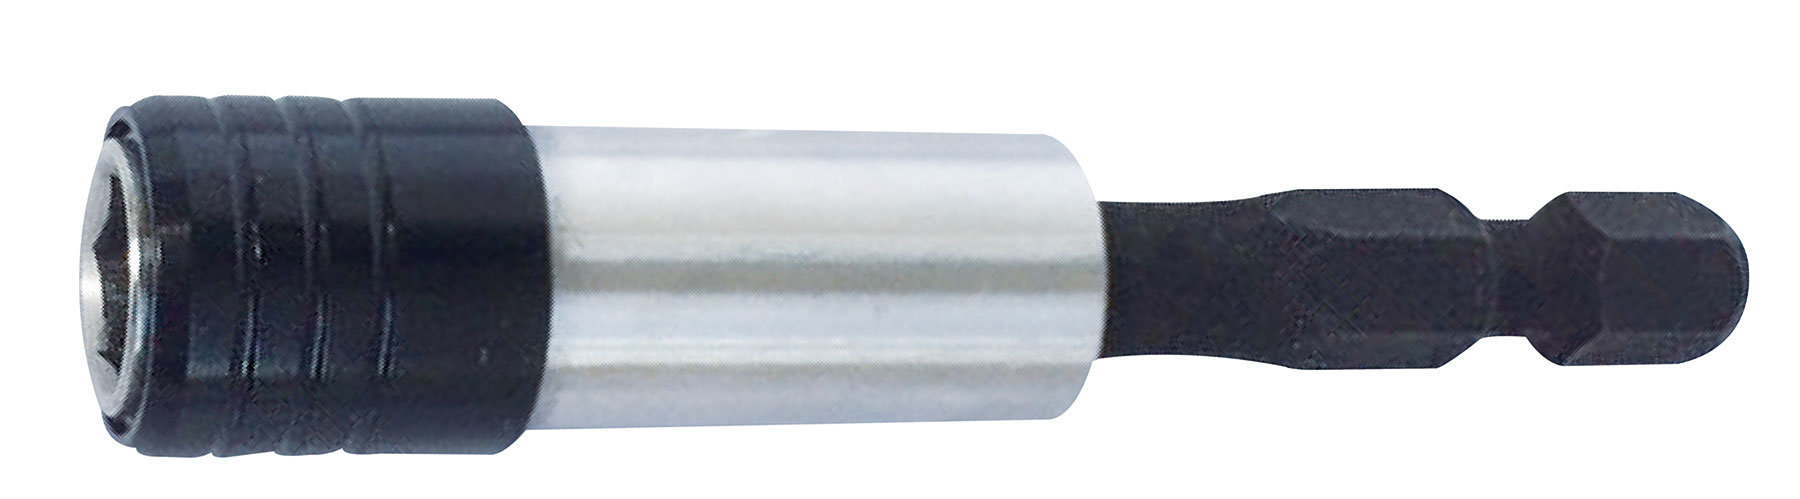 Projahn 1/4 Zoll Impact Bit-Magnethalter mit Schnellwechselverriegelung Länge 65 mm Professional / -2768